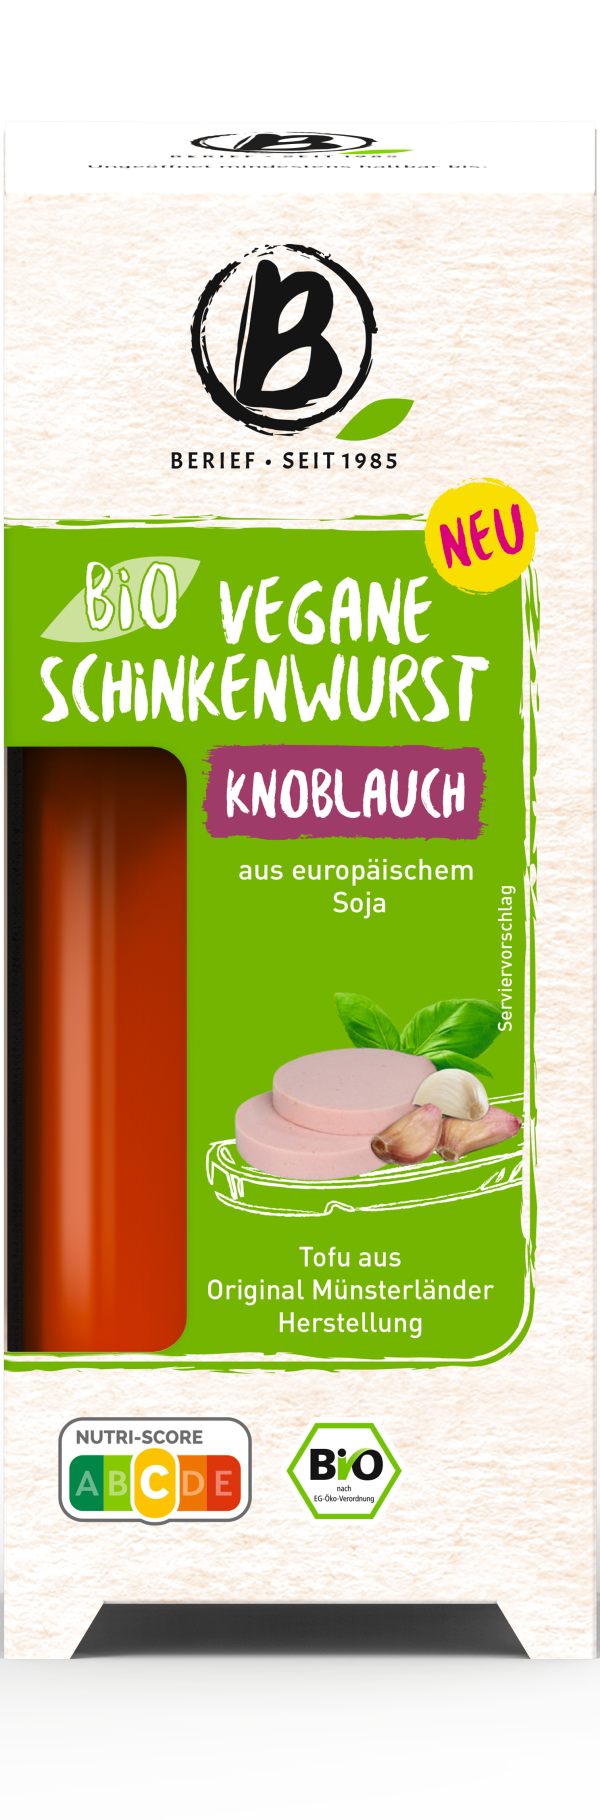 Bio vegane Schinkenwurst Knoblauch 2